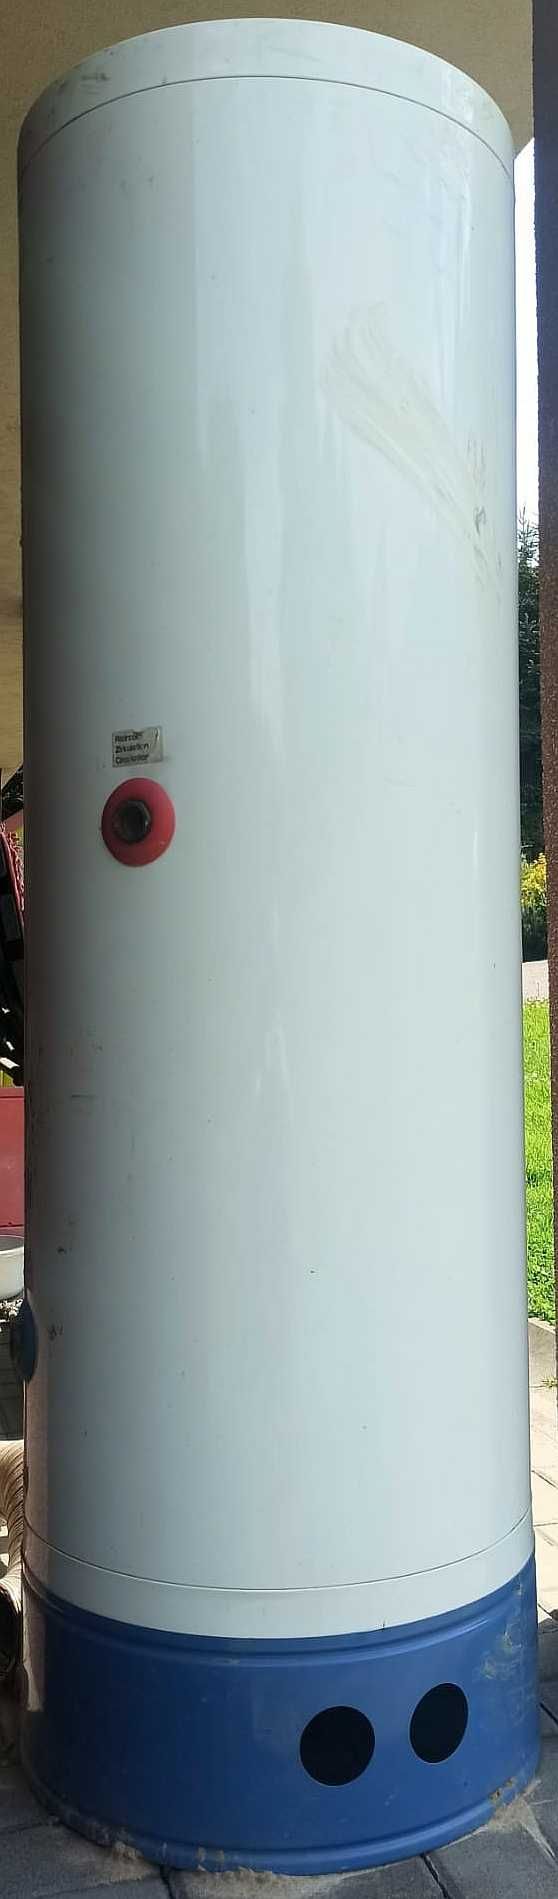 Bojler, gazowy podgrzewacz wody CWU STYLEBOILER AFP 150 - 150 litrów